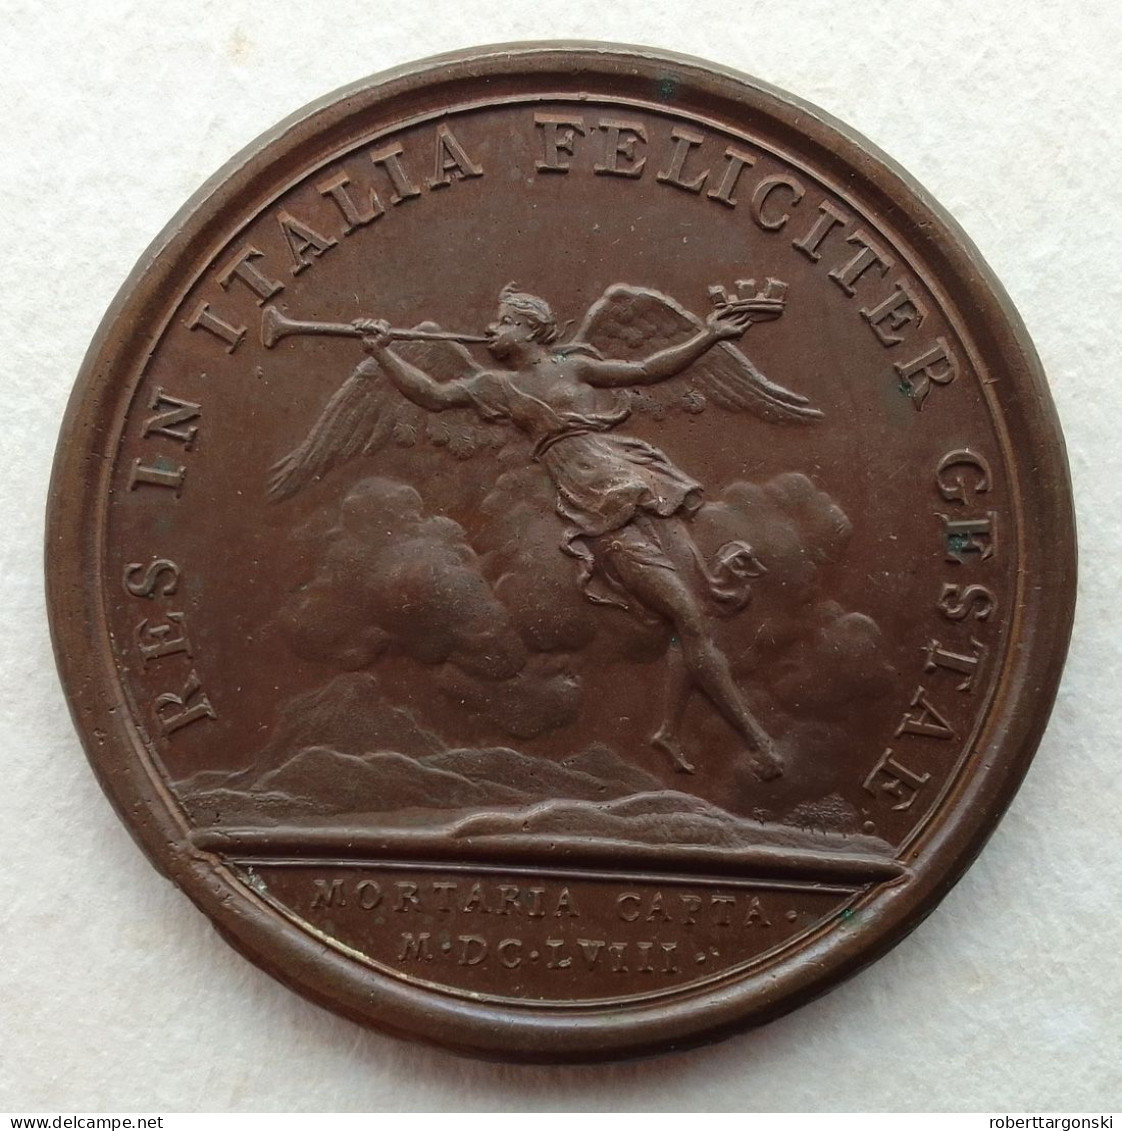 Medaille - France - Louis XIV - Mauger - 1658 - Monarquía / Nobleza